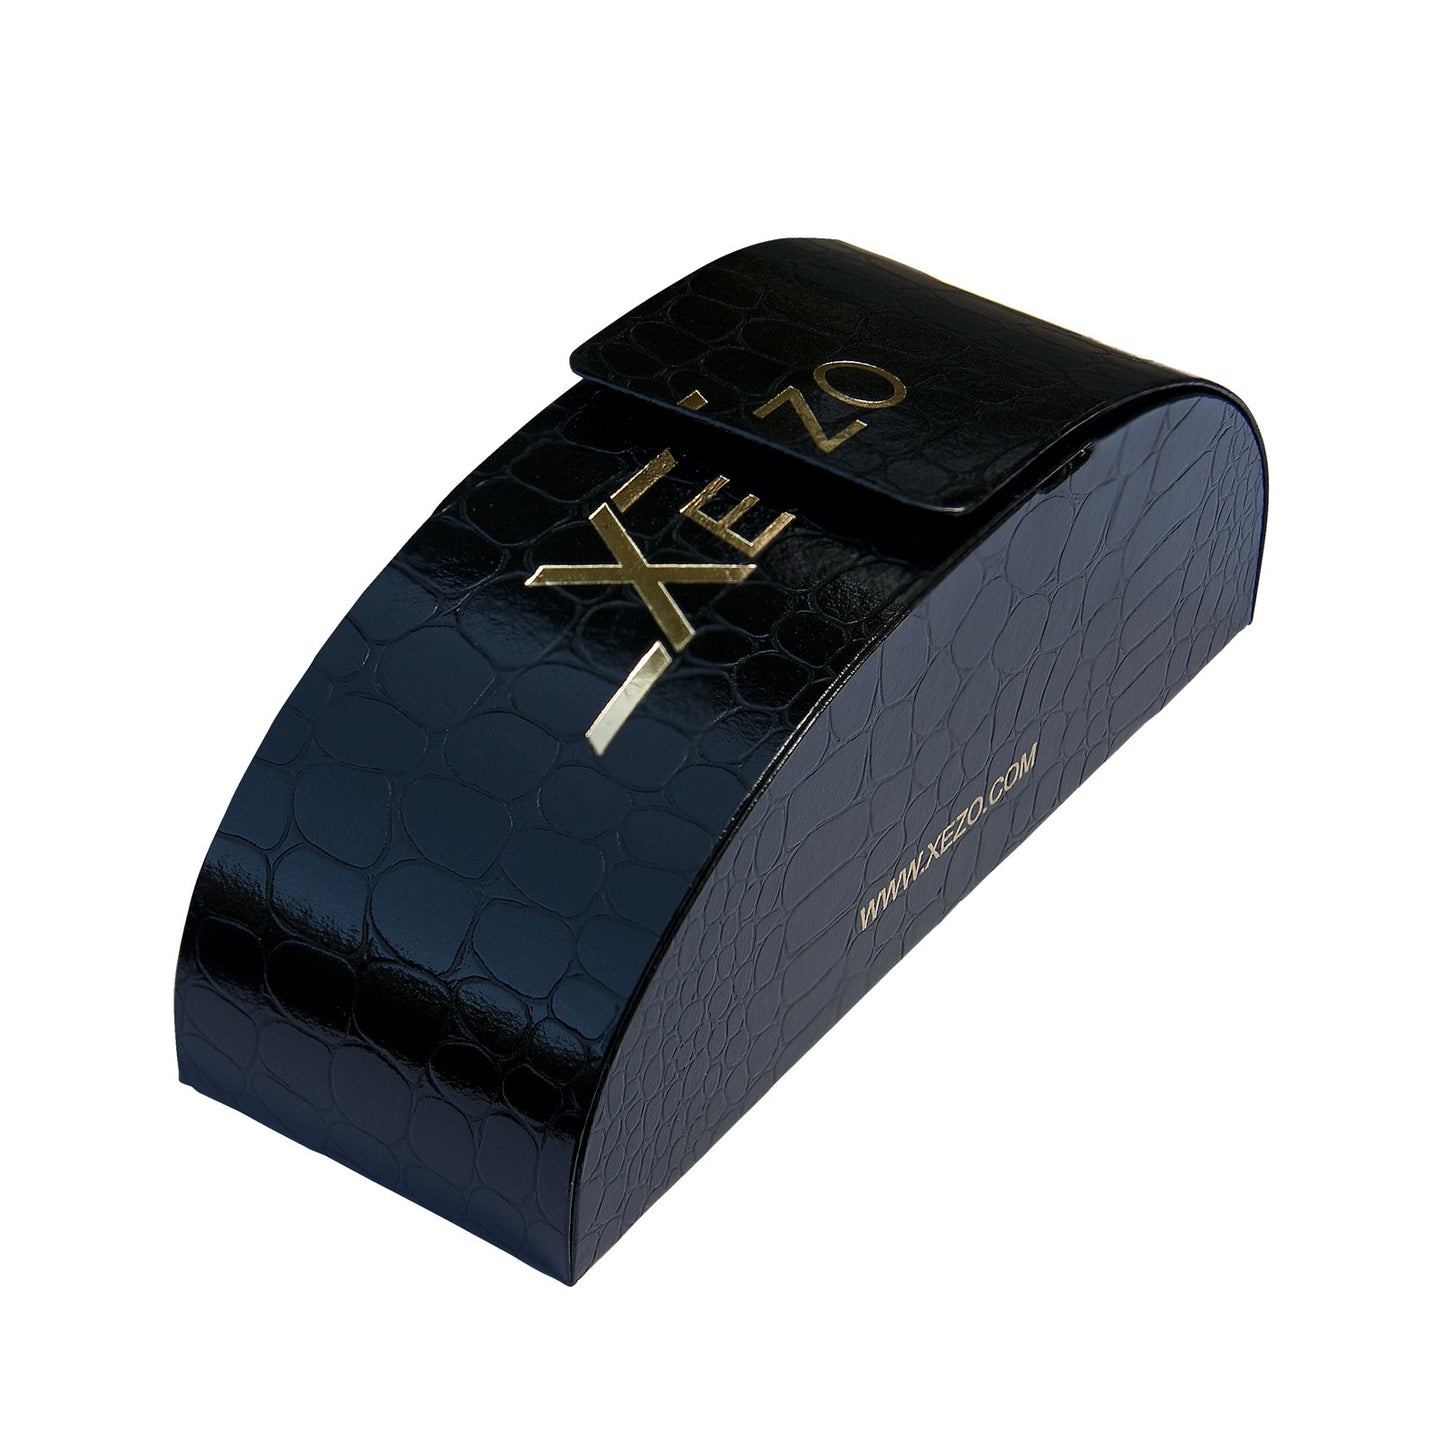 Xezo - Black gift box of the Airman 2002 R sunglasses